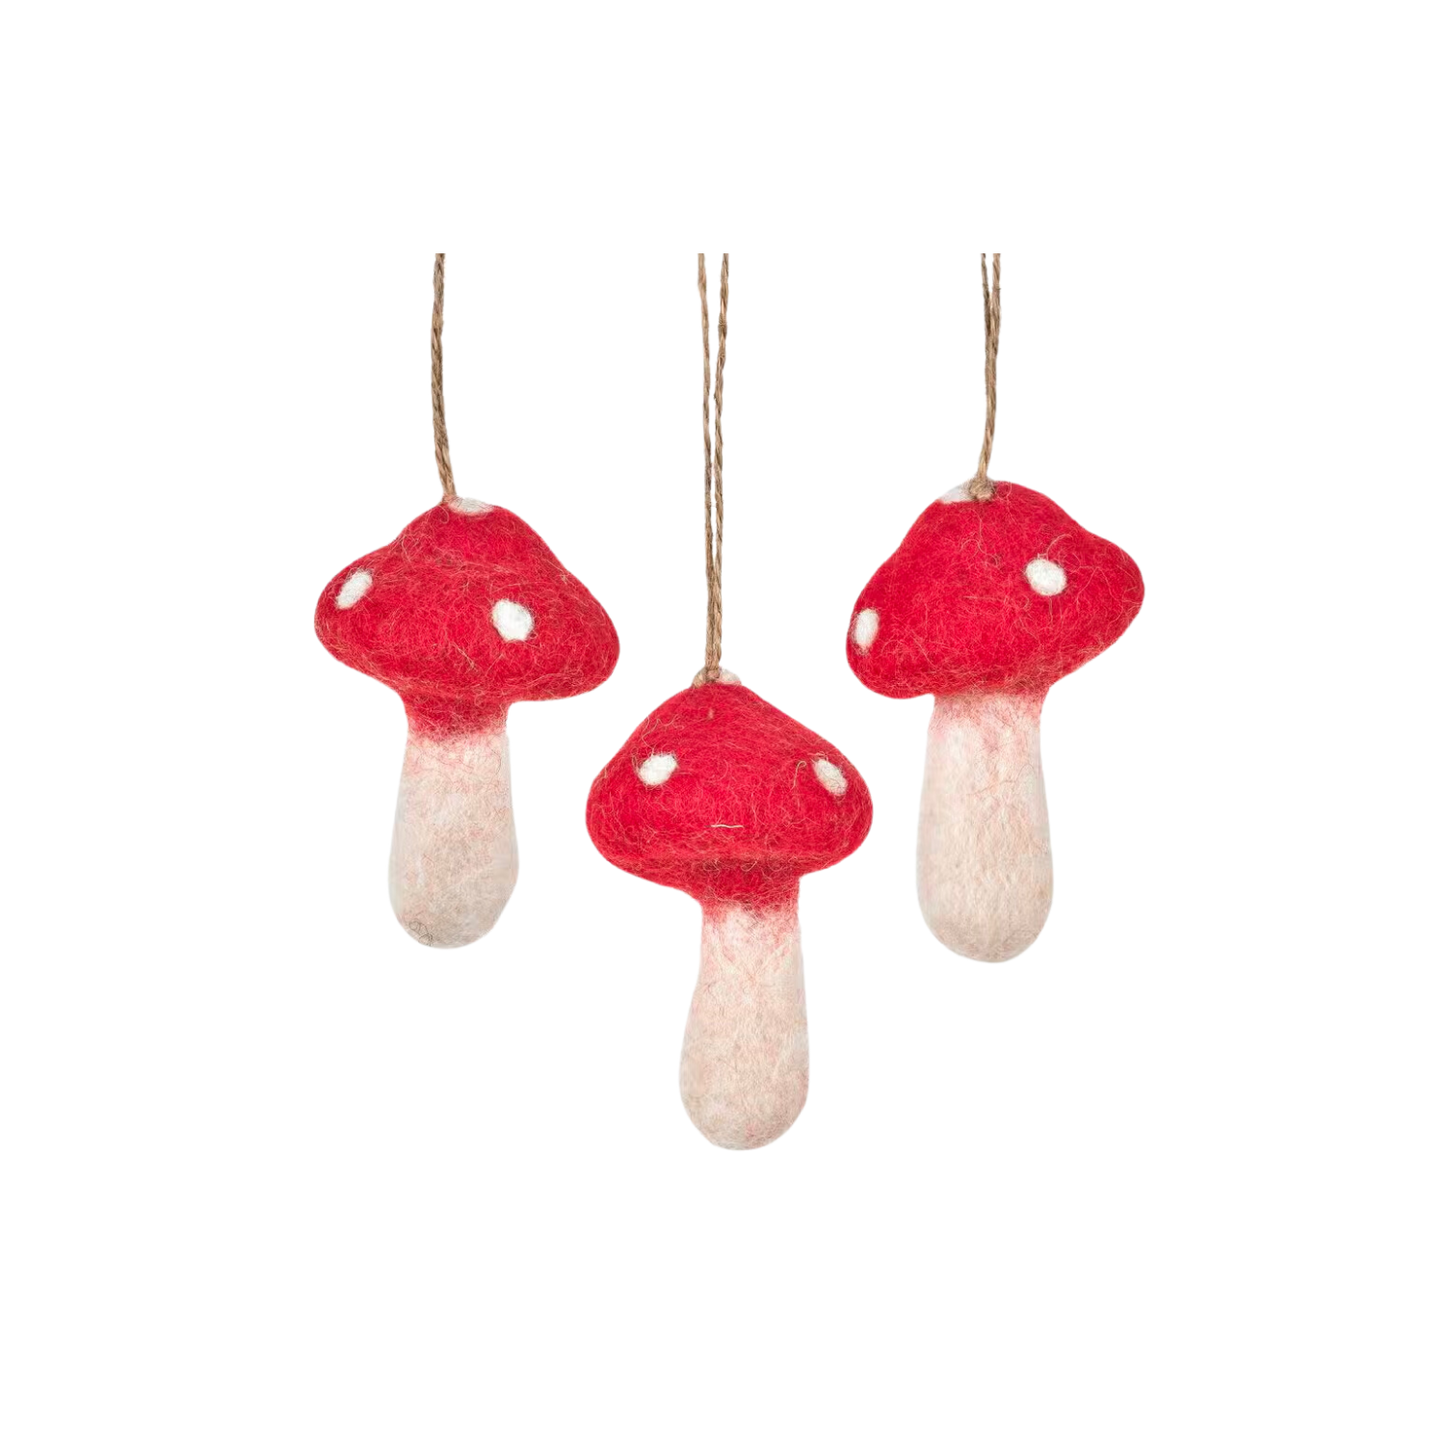 Felt Tree Decoration - Toadstools / Mushrooms (Set of 3)